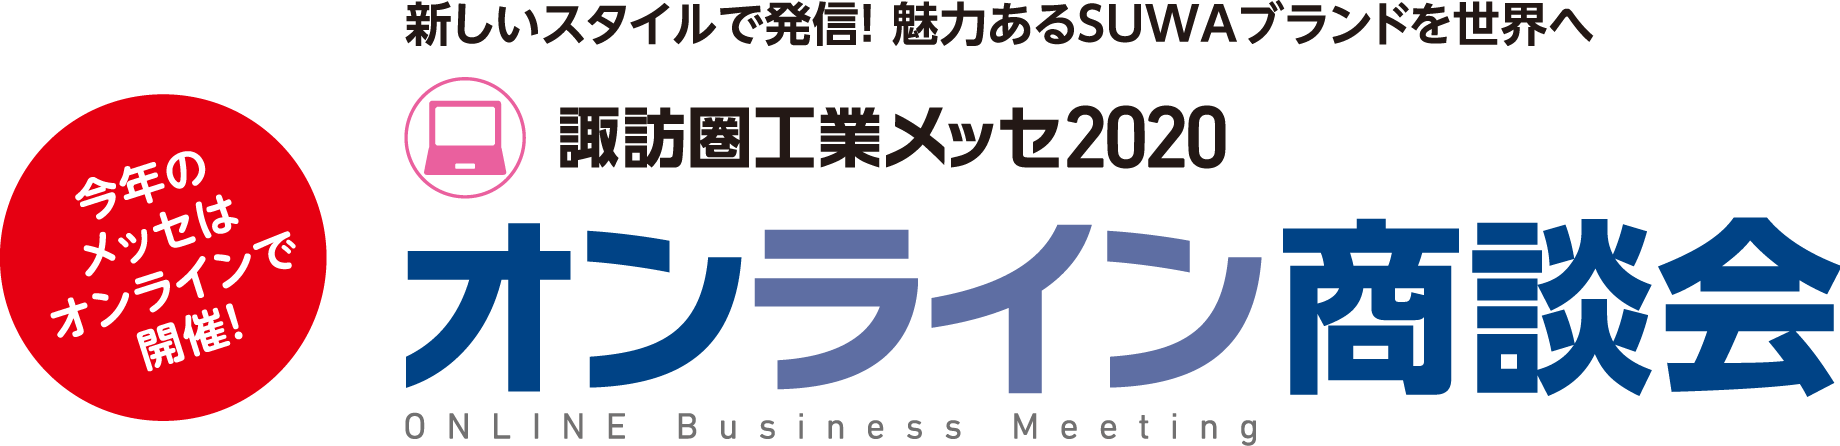 諏訪圏工業メッセ2020 オンライン商談会